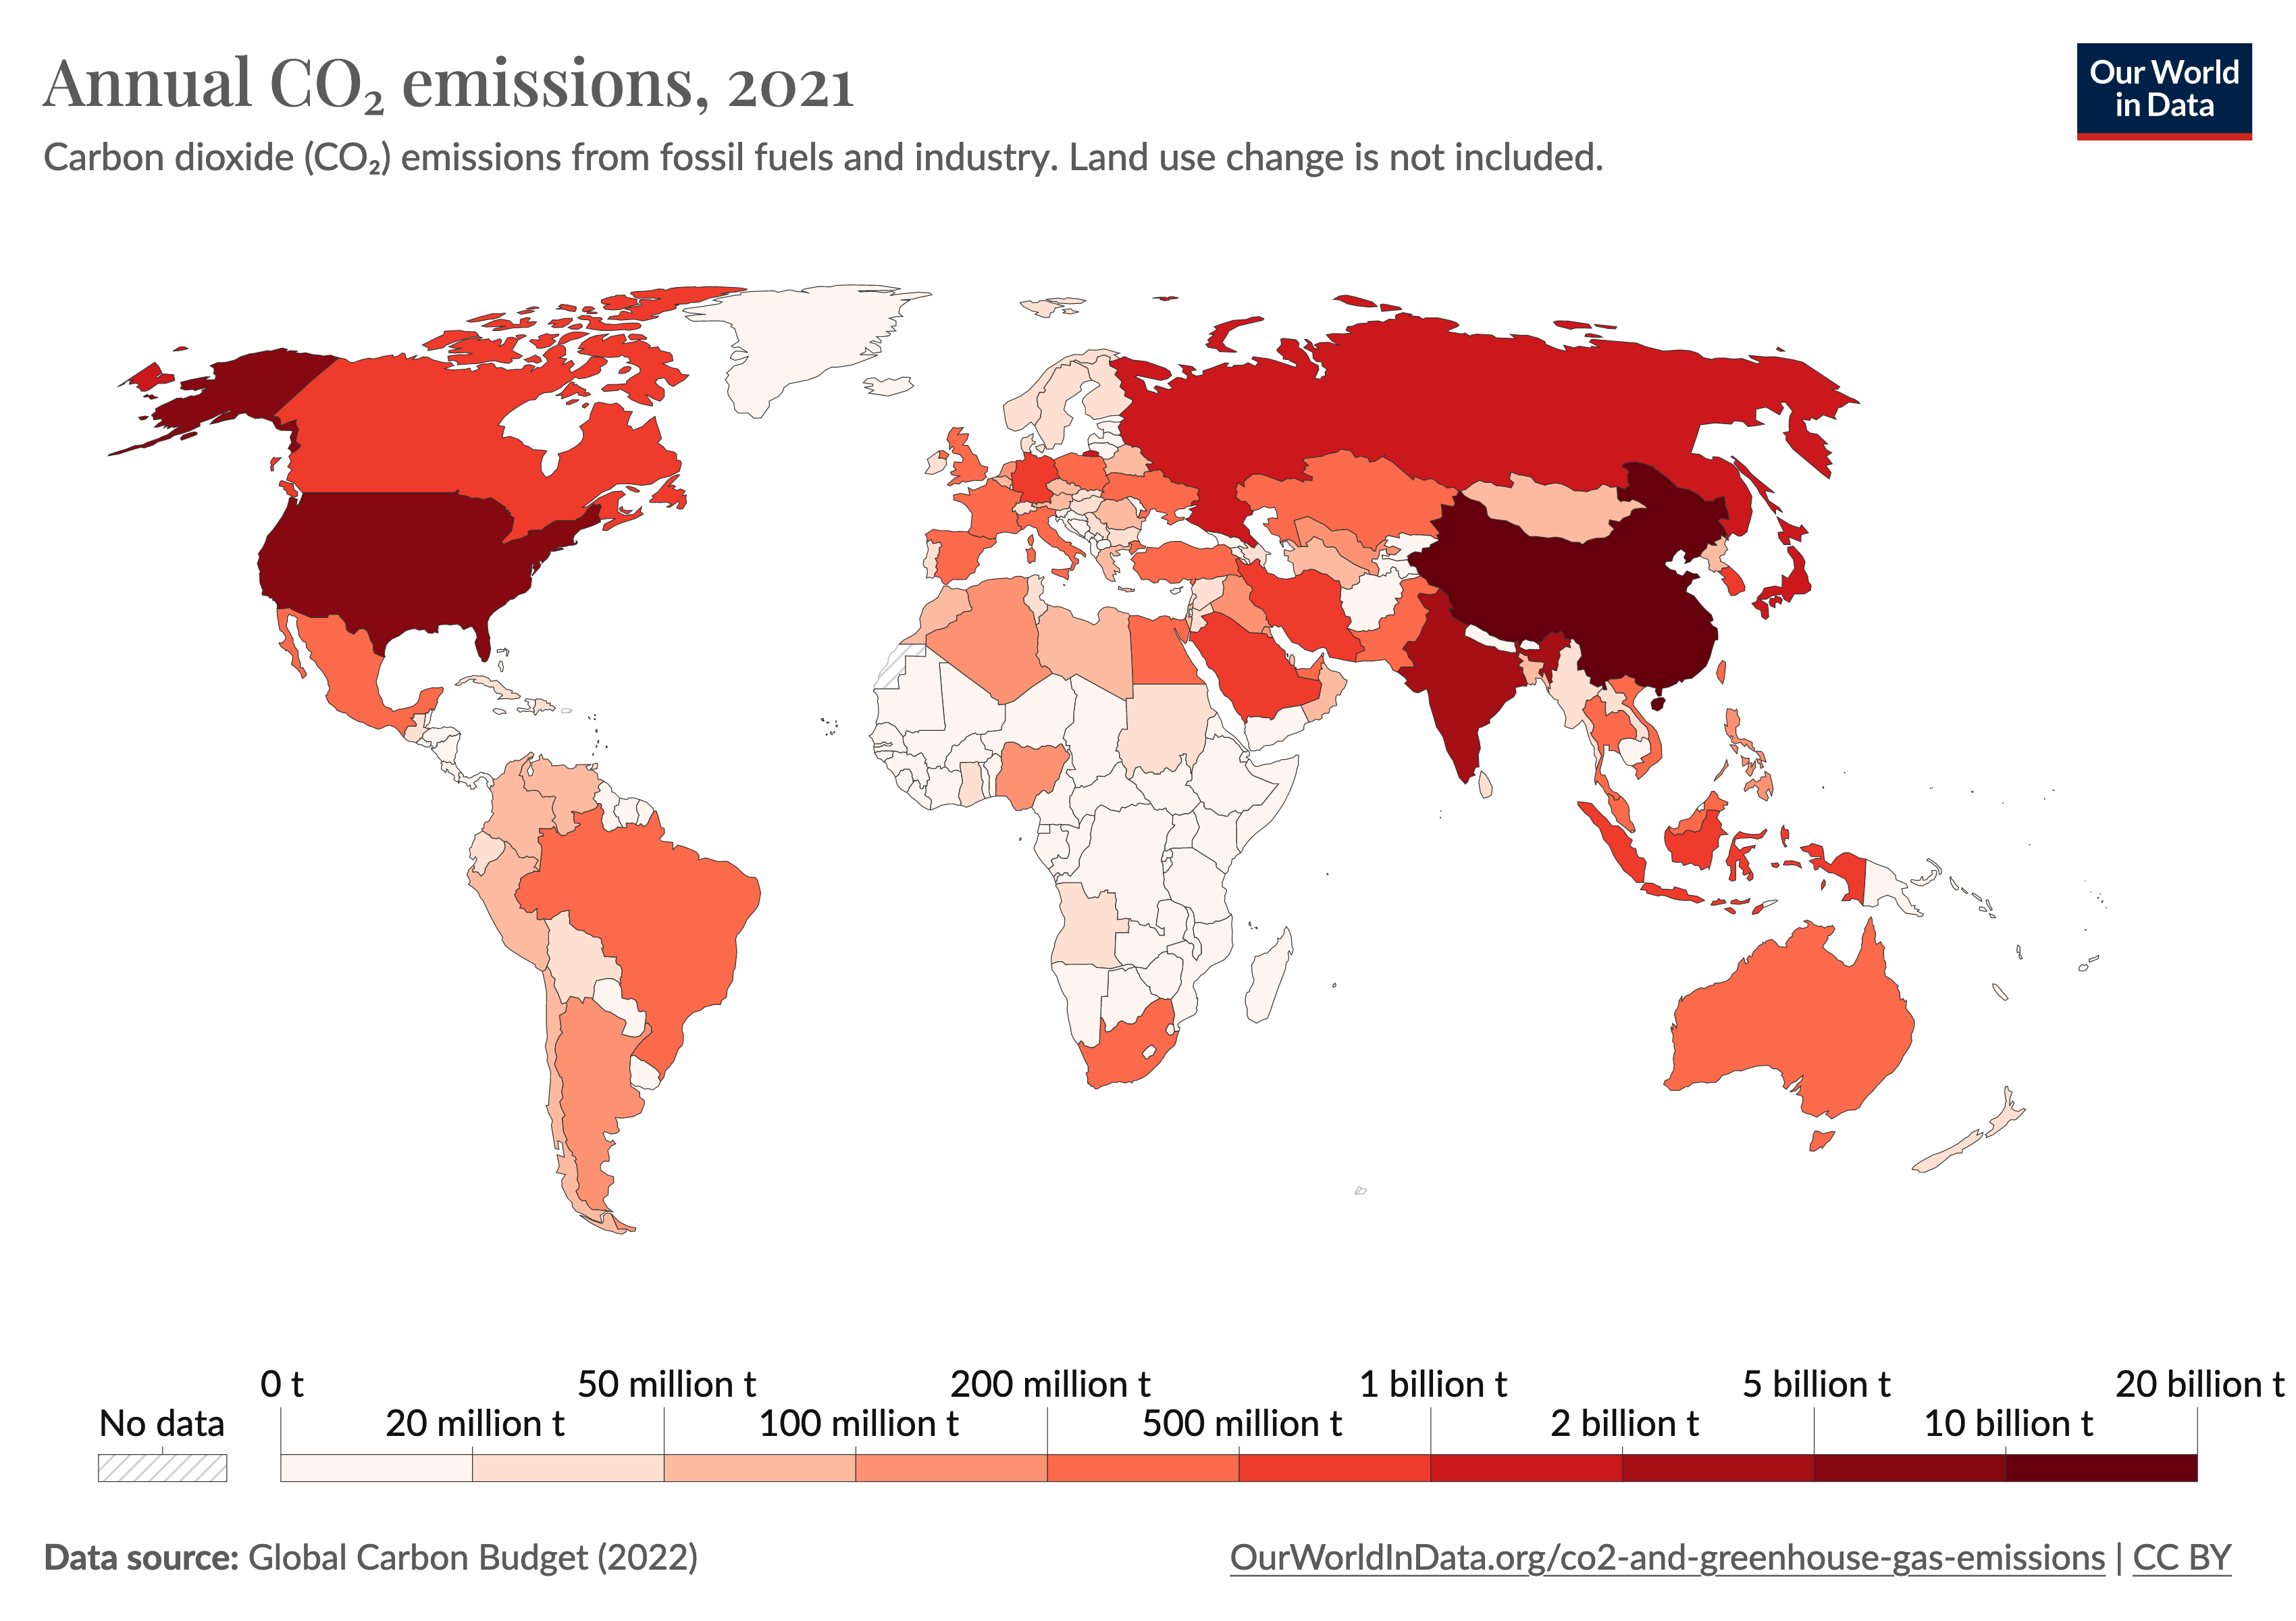 Carbon footprint - Wikipedia